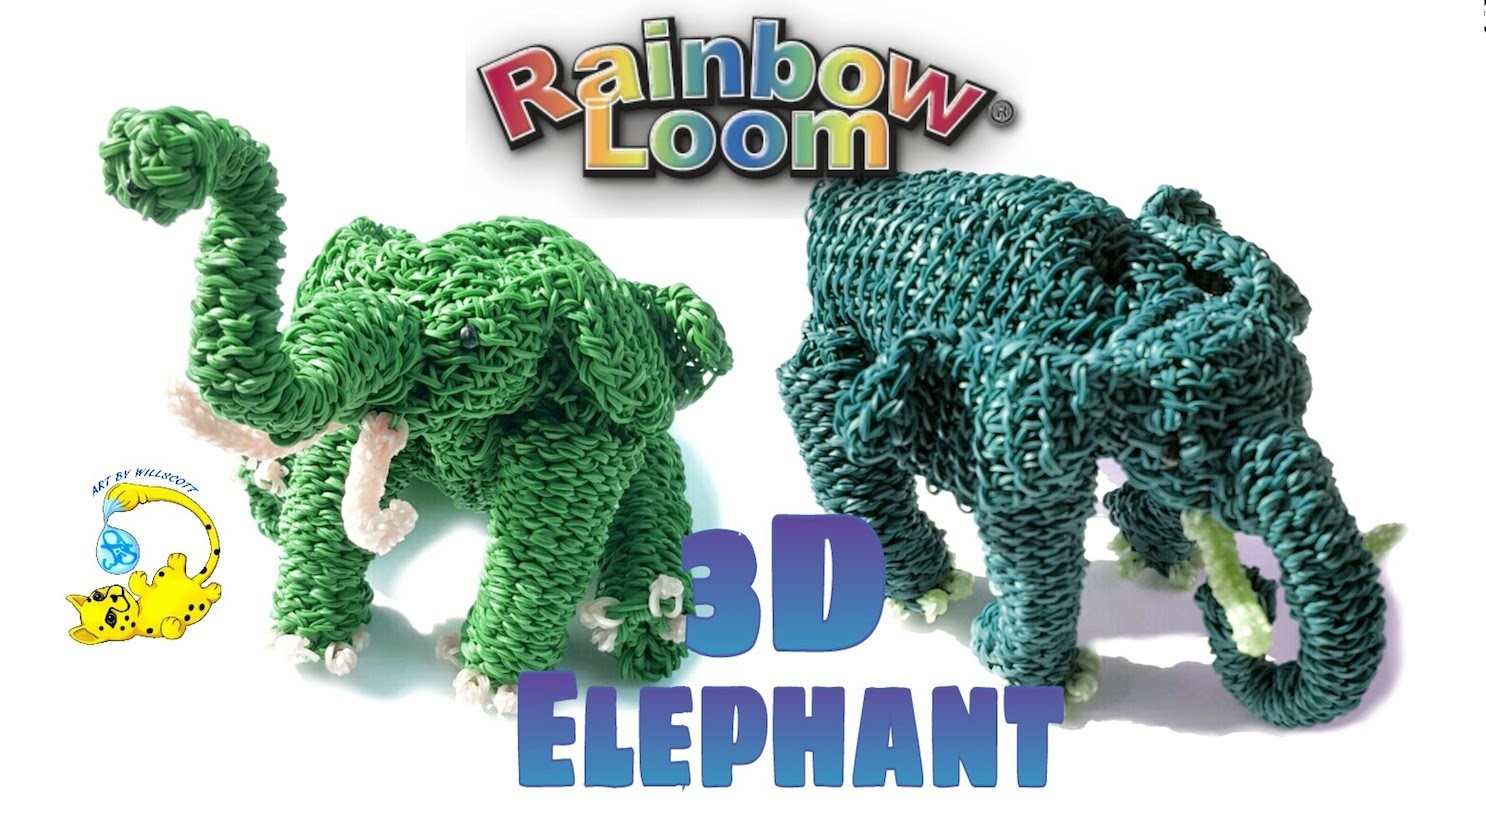 Rainbow Loom 3D Elephant (Part 6.6) Elefante, слон, l'éléphant, 象